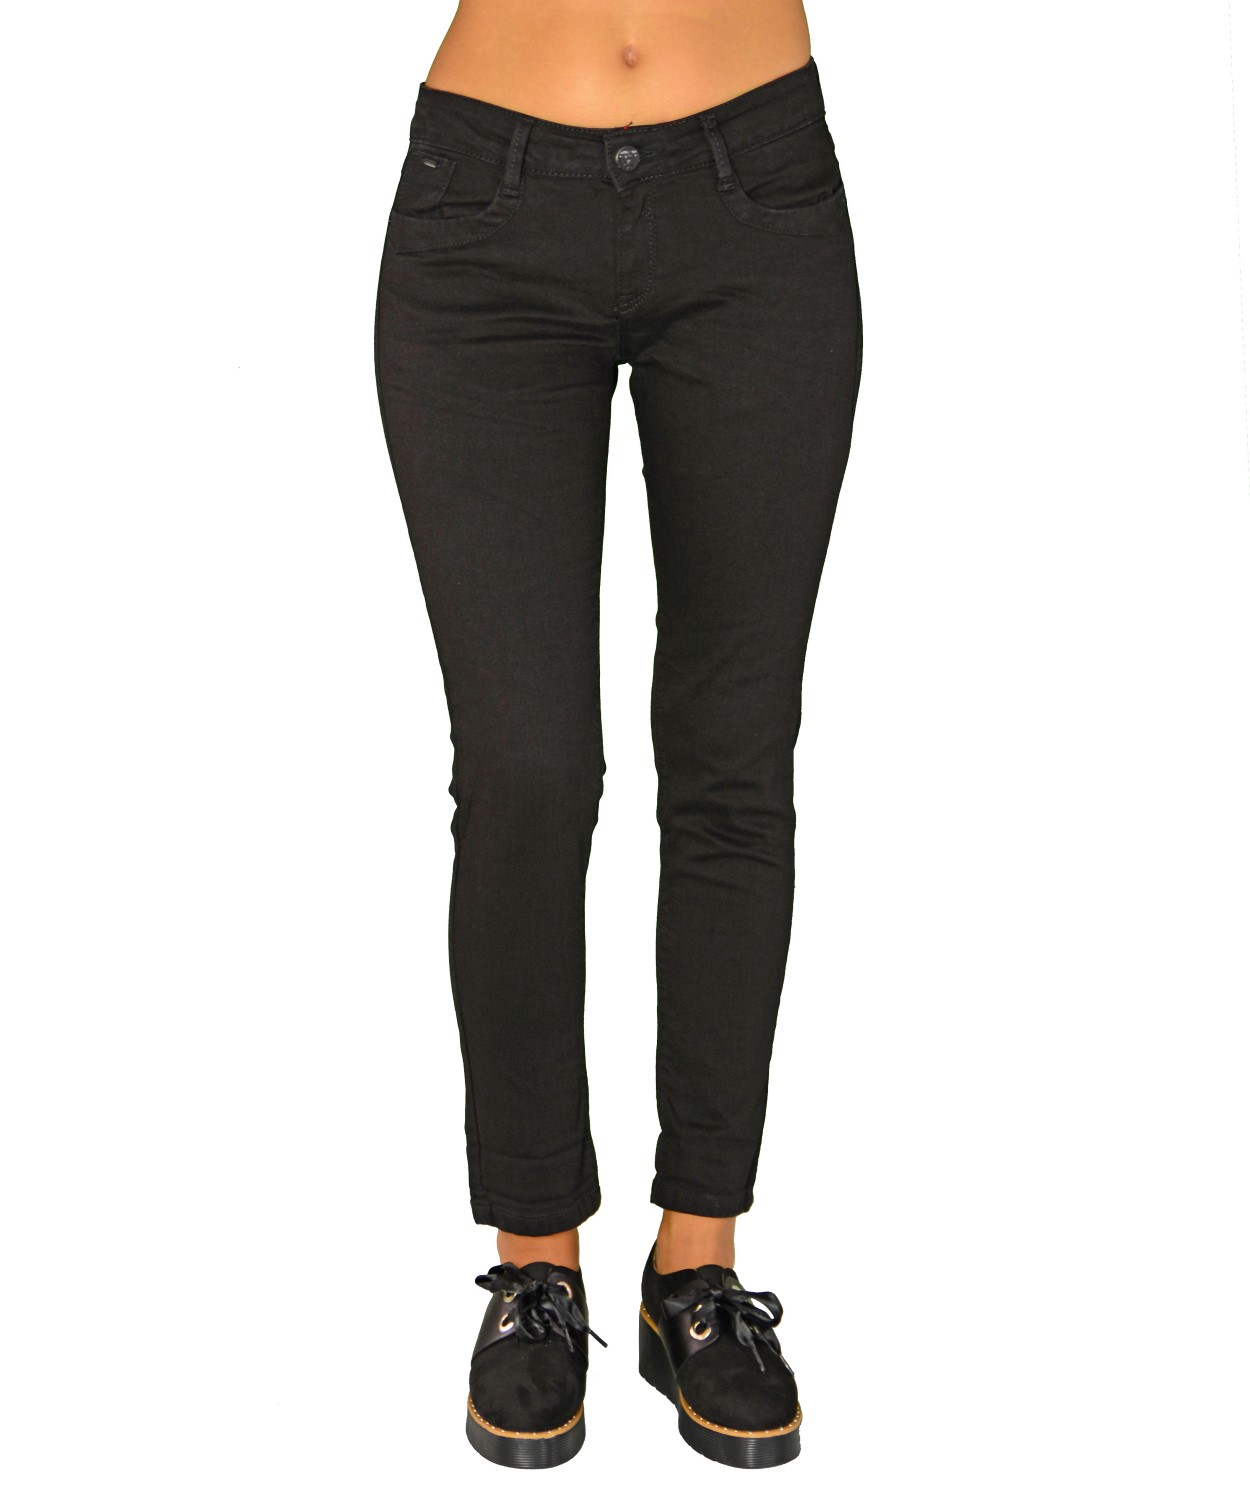 Γυναικείο τζιν παντελόνι μεσοκάβαλο μαύρο Z3C